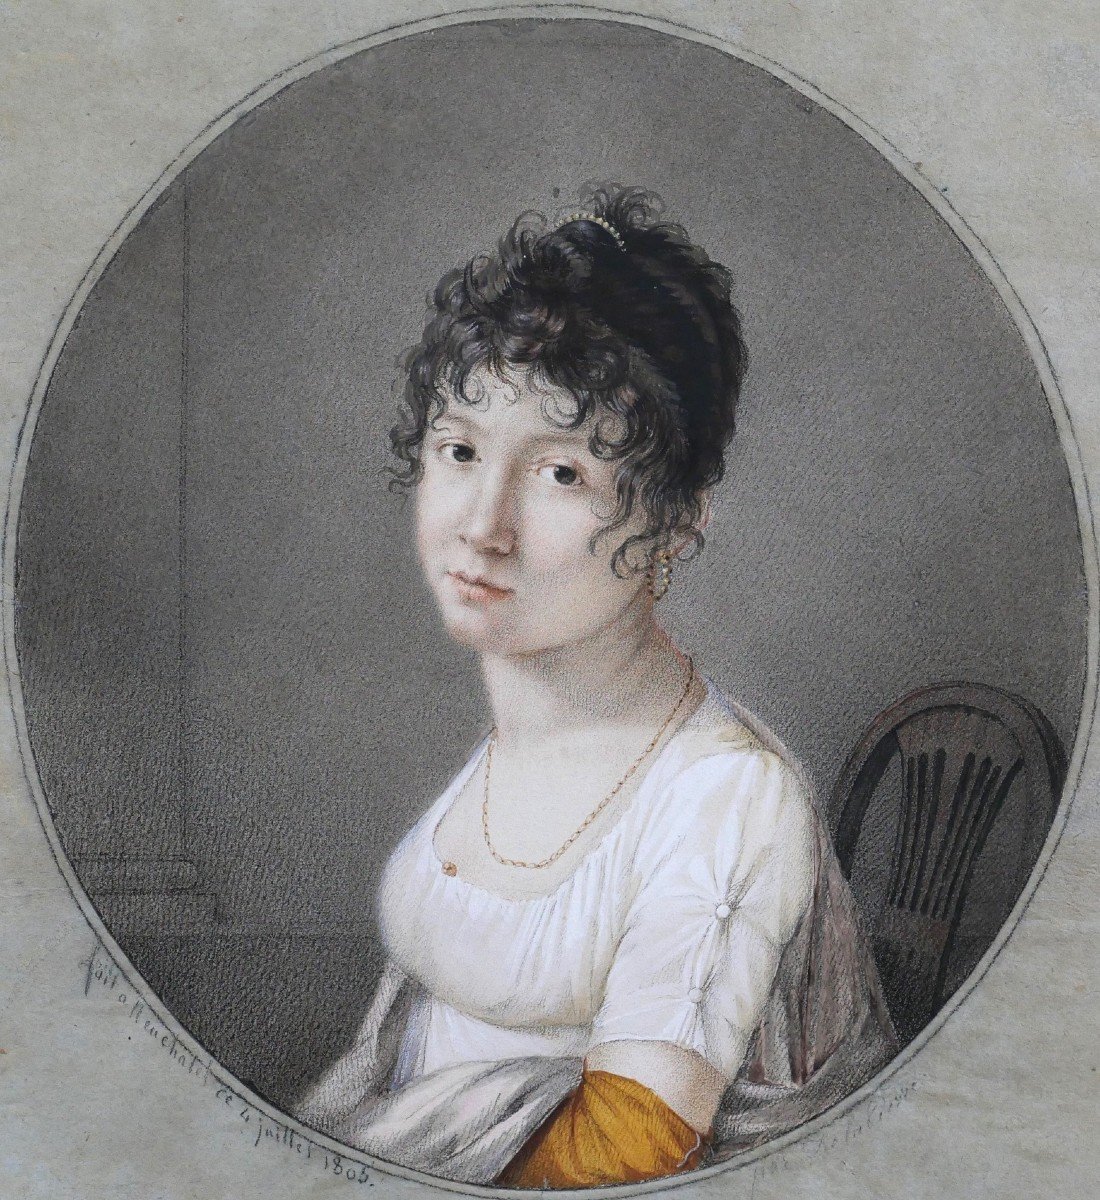 Gaspart-Isaac Delapierre 1780-1811 Portrait de femme, dessin, 1805